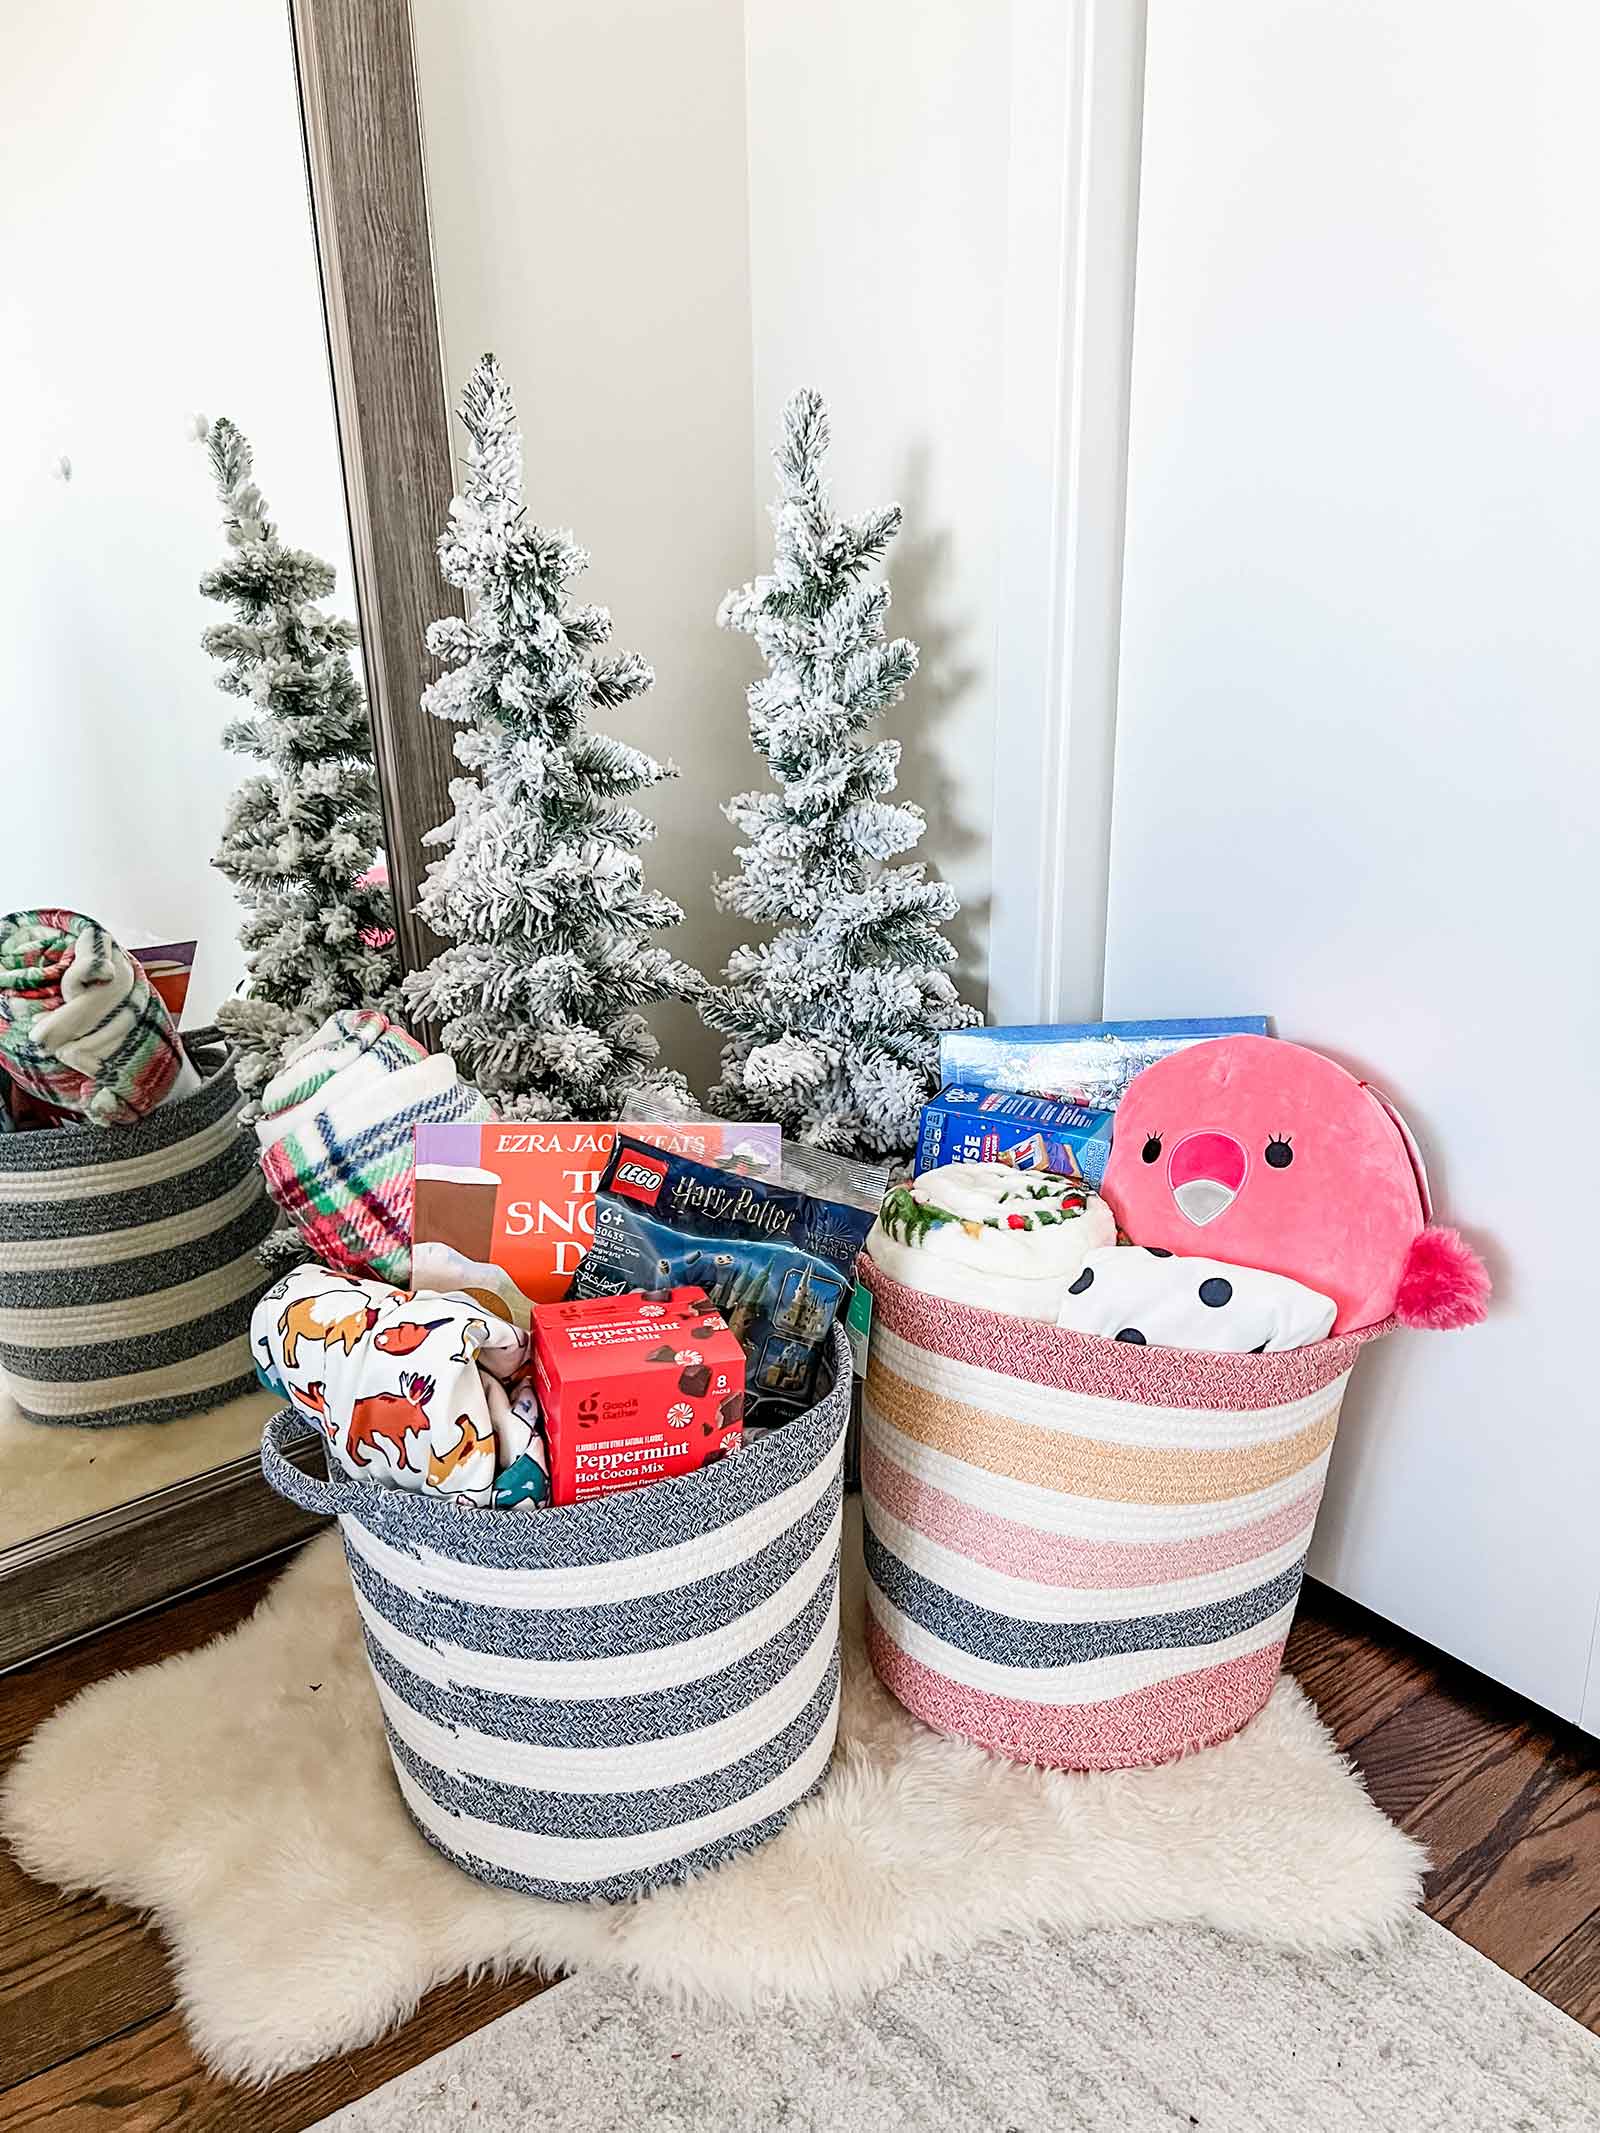 Target gift basket idea for kids